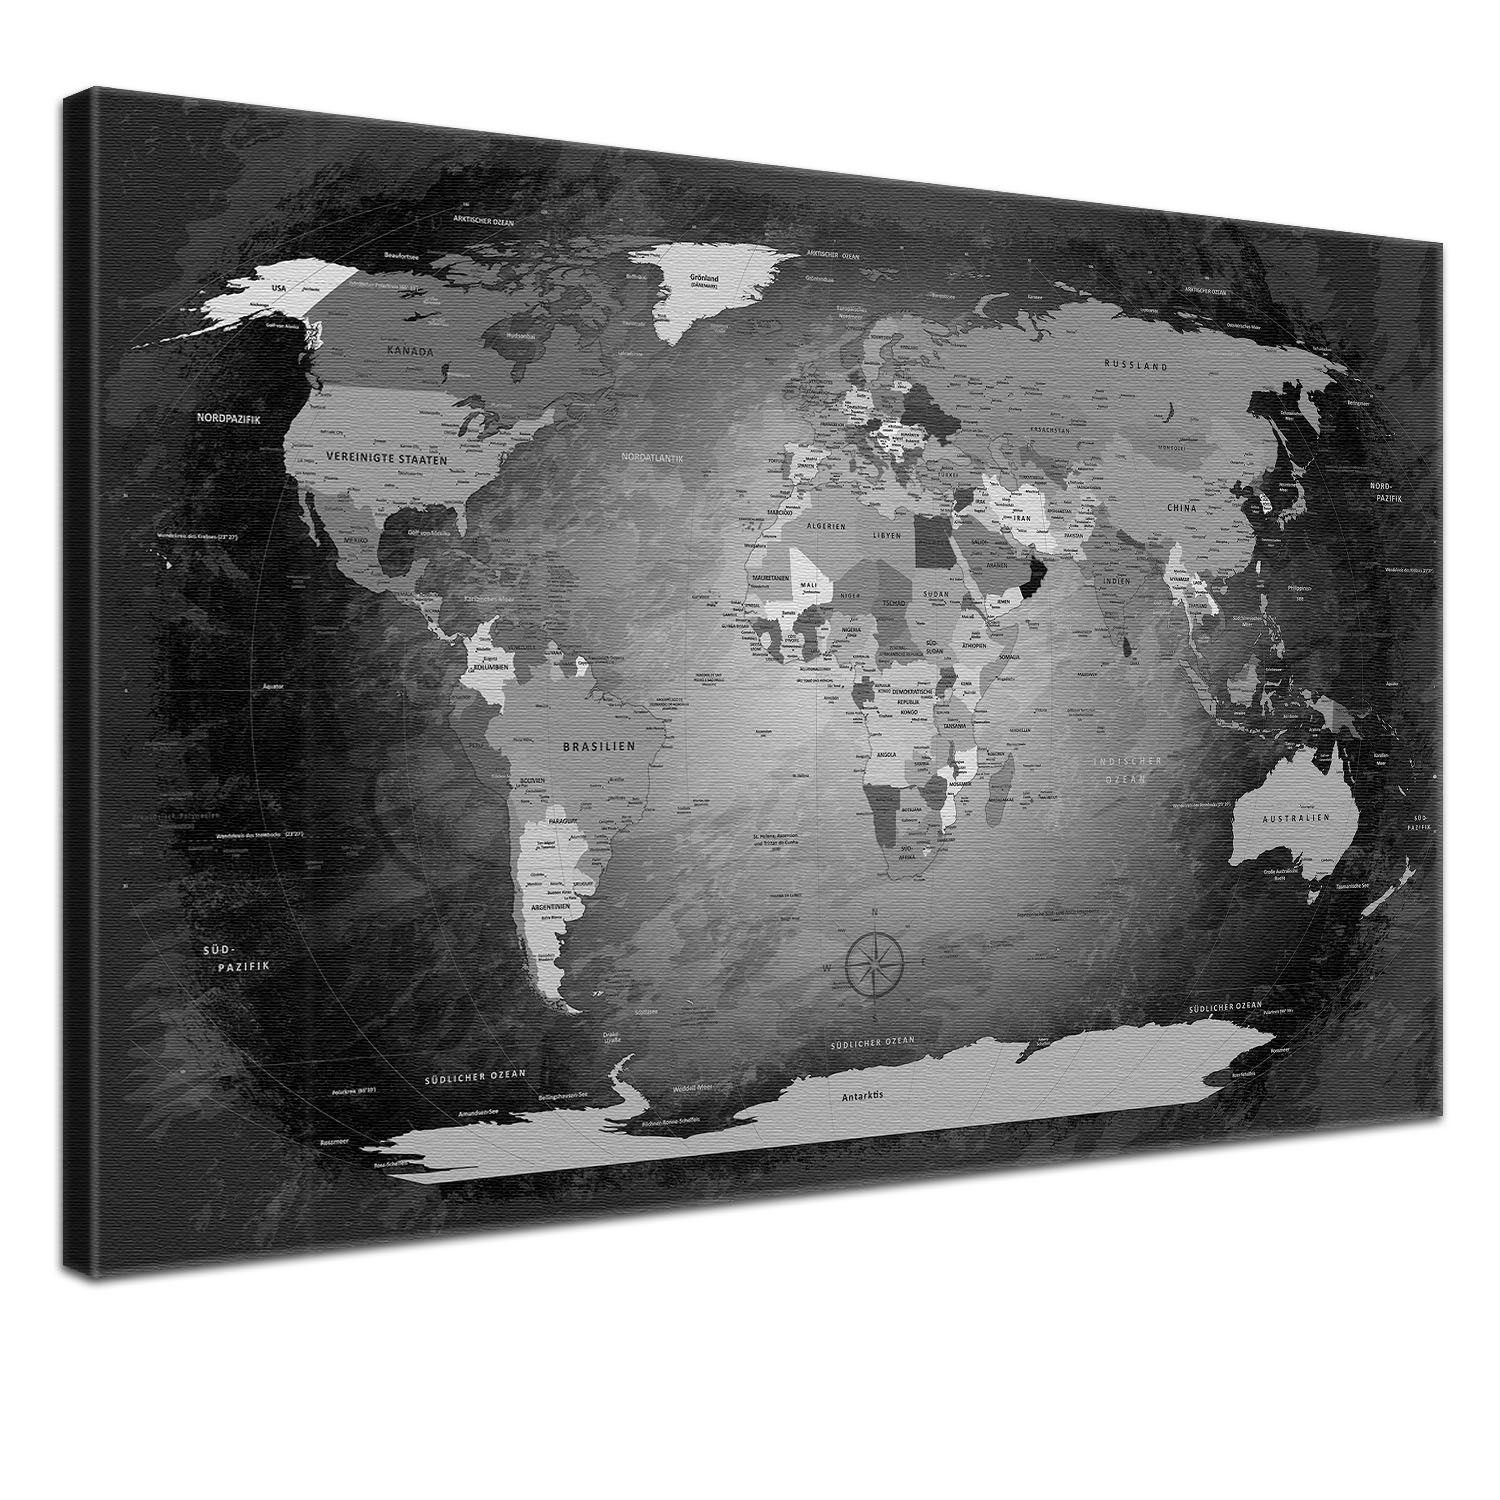 LANA KK Leinwandbild Weltkarte Pinnwand zum markieren von Reisezielen, deutsche Beschriftung Black & White